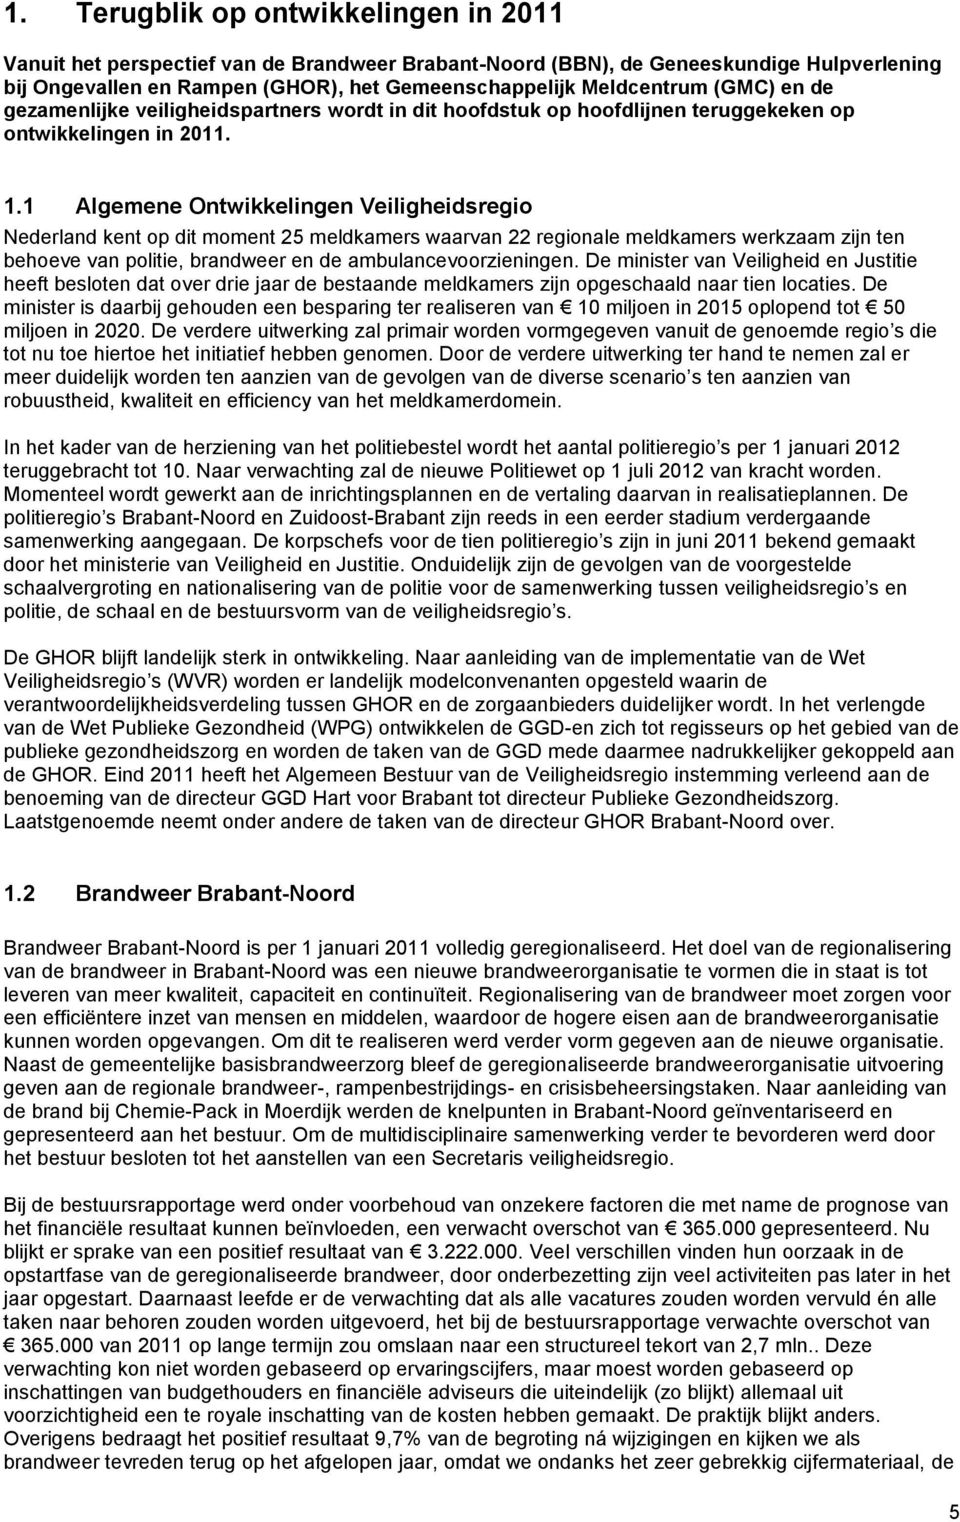 1 Algemene Ontwikkelingen Veiligheidsregio Nederland kent op dit moment 25 meldkamers waarvan 22 regionale meldkamers werkzaam zijn ten behoeve van politie, brandweer en de ambulancevoorzieningen.